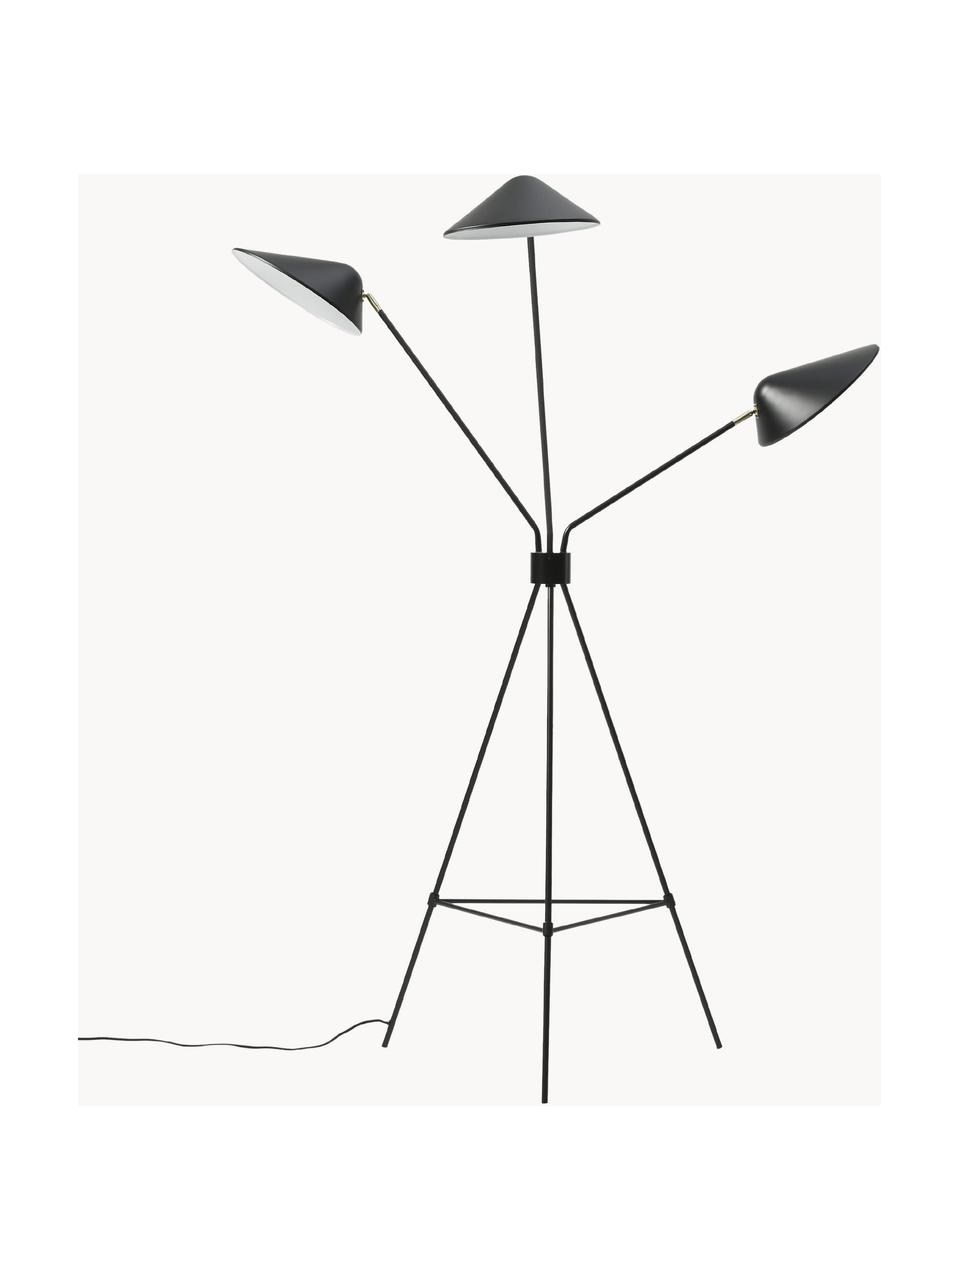 Grote tripod vloerlamp Neron, Decoratie: vermessingd metaal, Zwart, H 170 cm